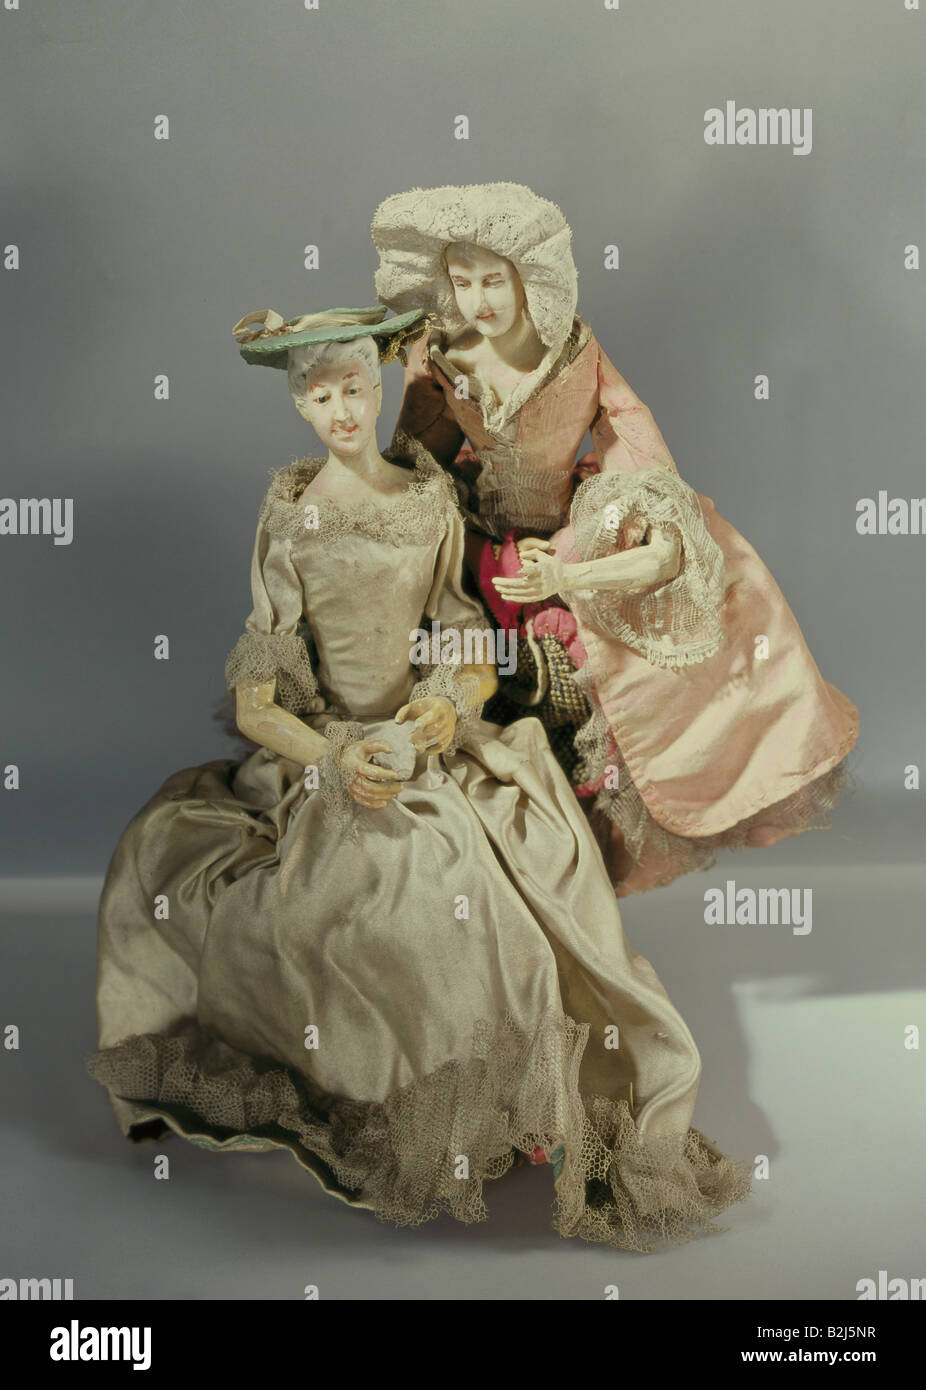 Giocattoli, bambole, 'Zwei modisch gekleidete Damen' (Due Signore vestiti alla moda), legno, cera per teste, vestiti, Germania, fine 18th secolo, Museo Nazionale Bavarese, Monaco di Baviera, Foto Stock